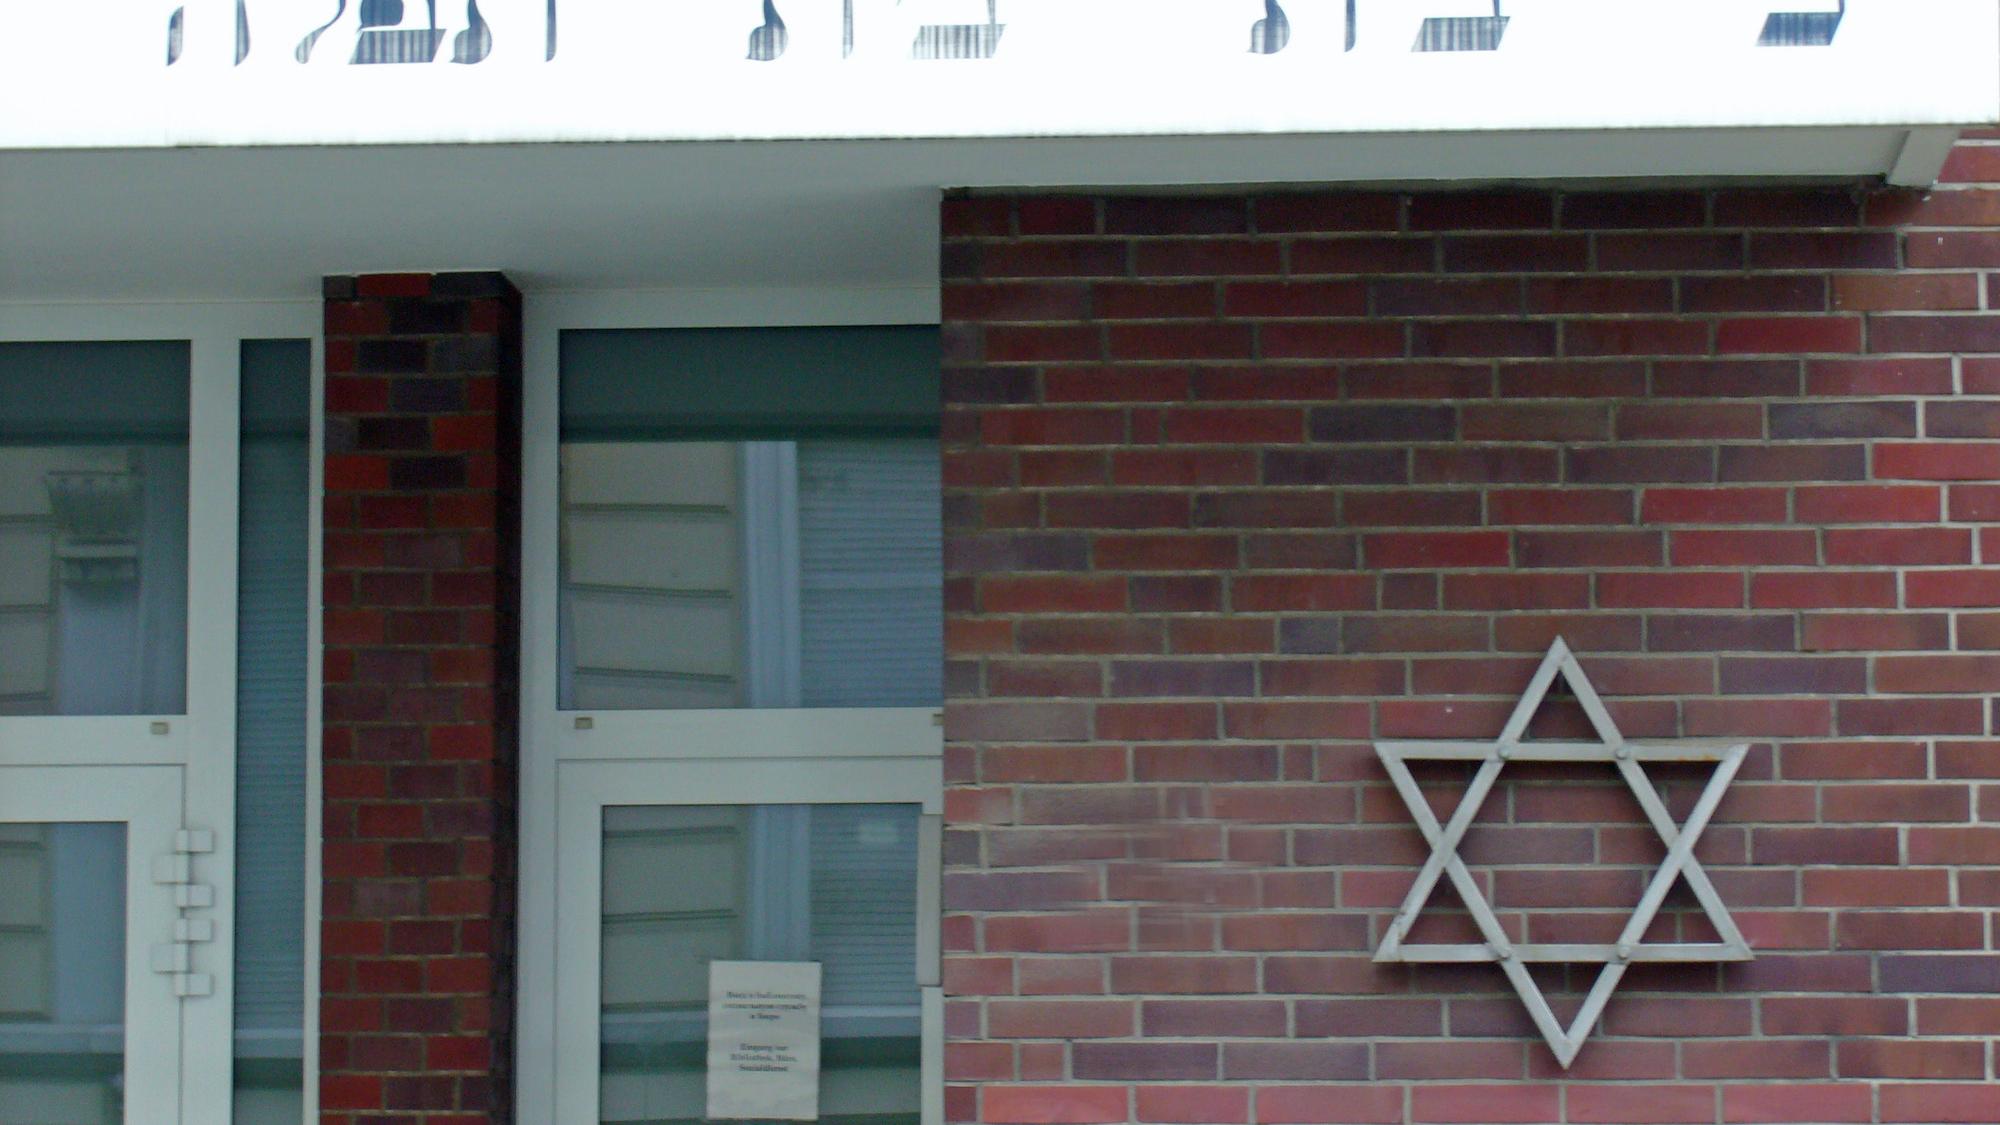 Der Davidstern an der Fassade der Synagoge in Mönchengladbach. (c) Garnet Manecke